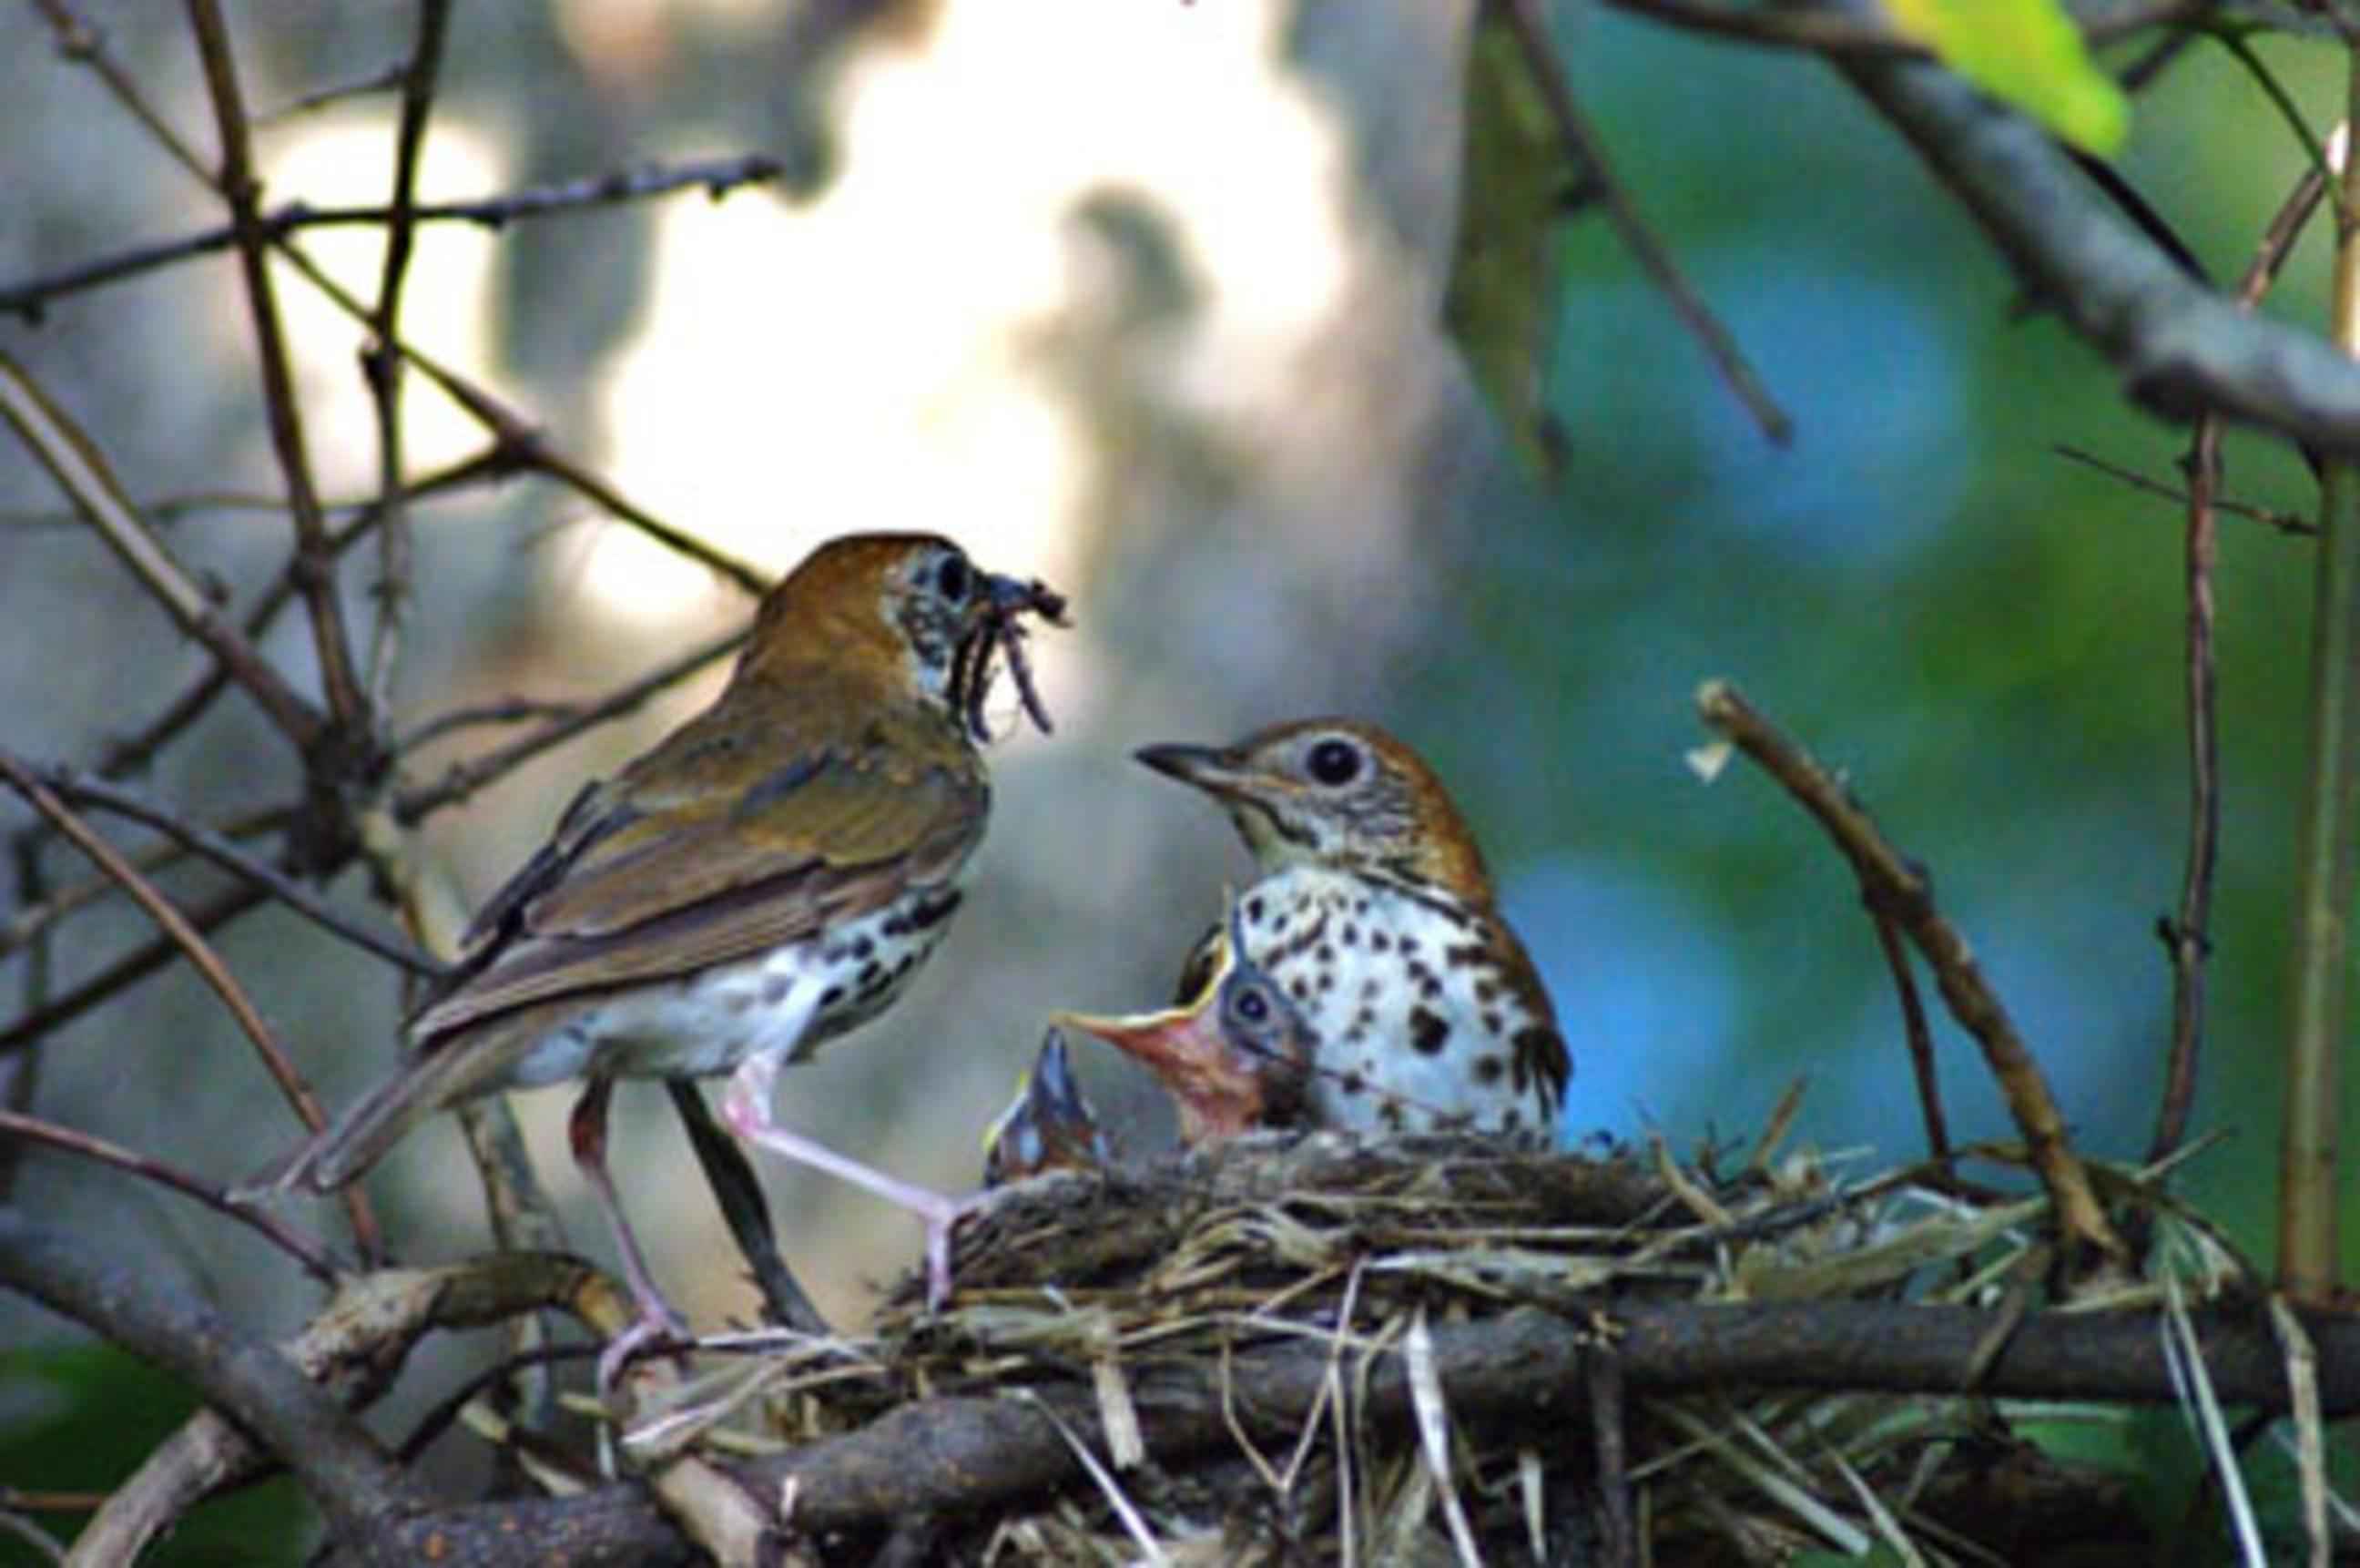 bird-family-in-nest.jpg